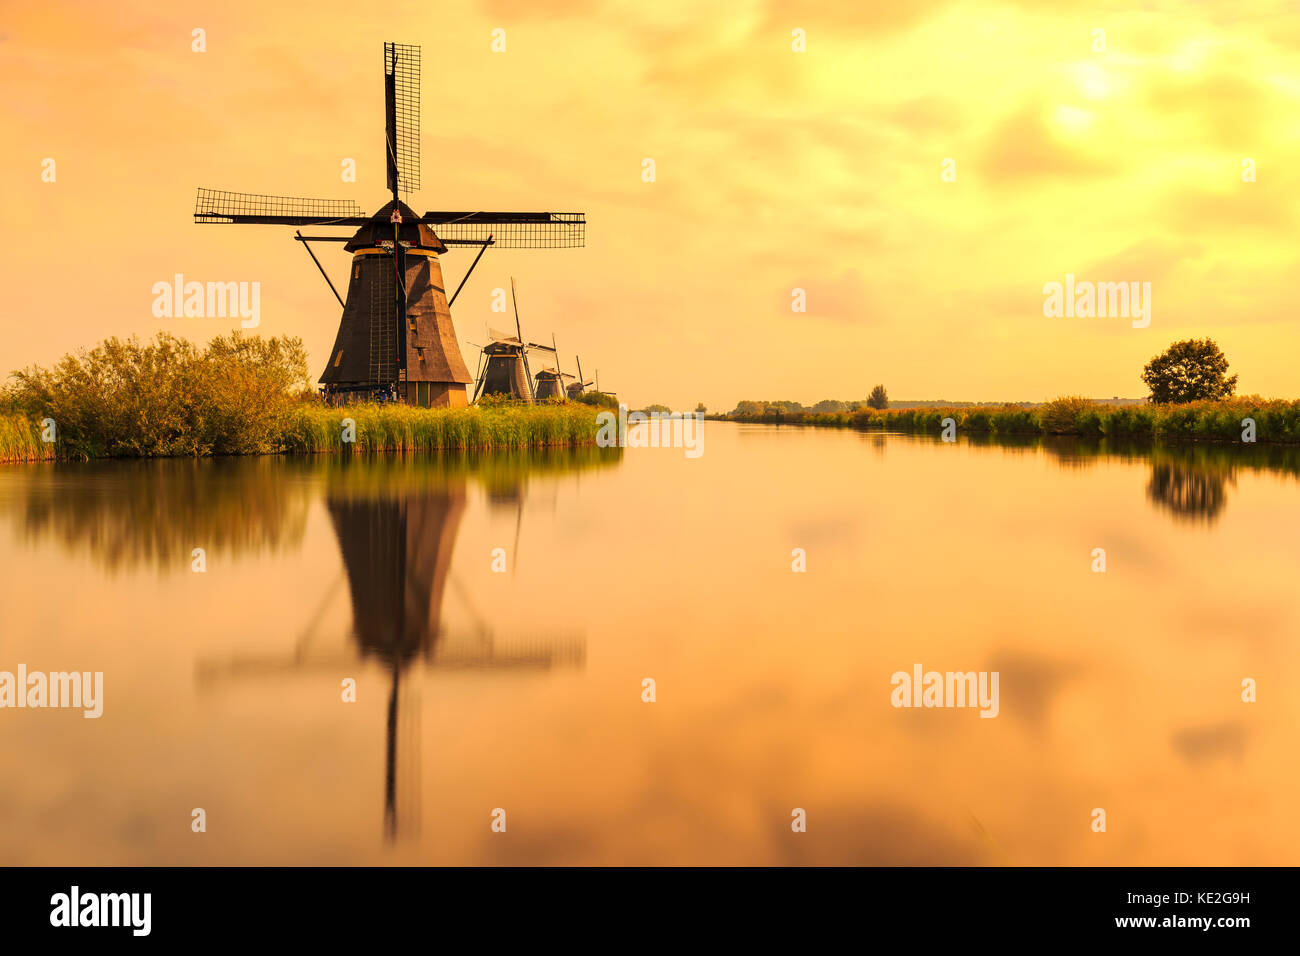 Moulins à vent de Kinderdijk traditionnel néerlandais, l'unesco, patrimoine mondial lors d'une journée ensoleillée à la fin de l'été. reflet visible sur la surface de l'eau. Banque D'Images